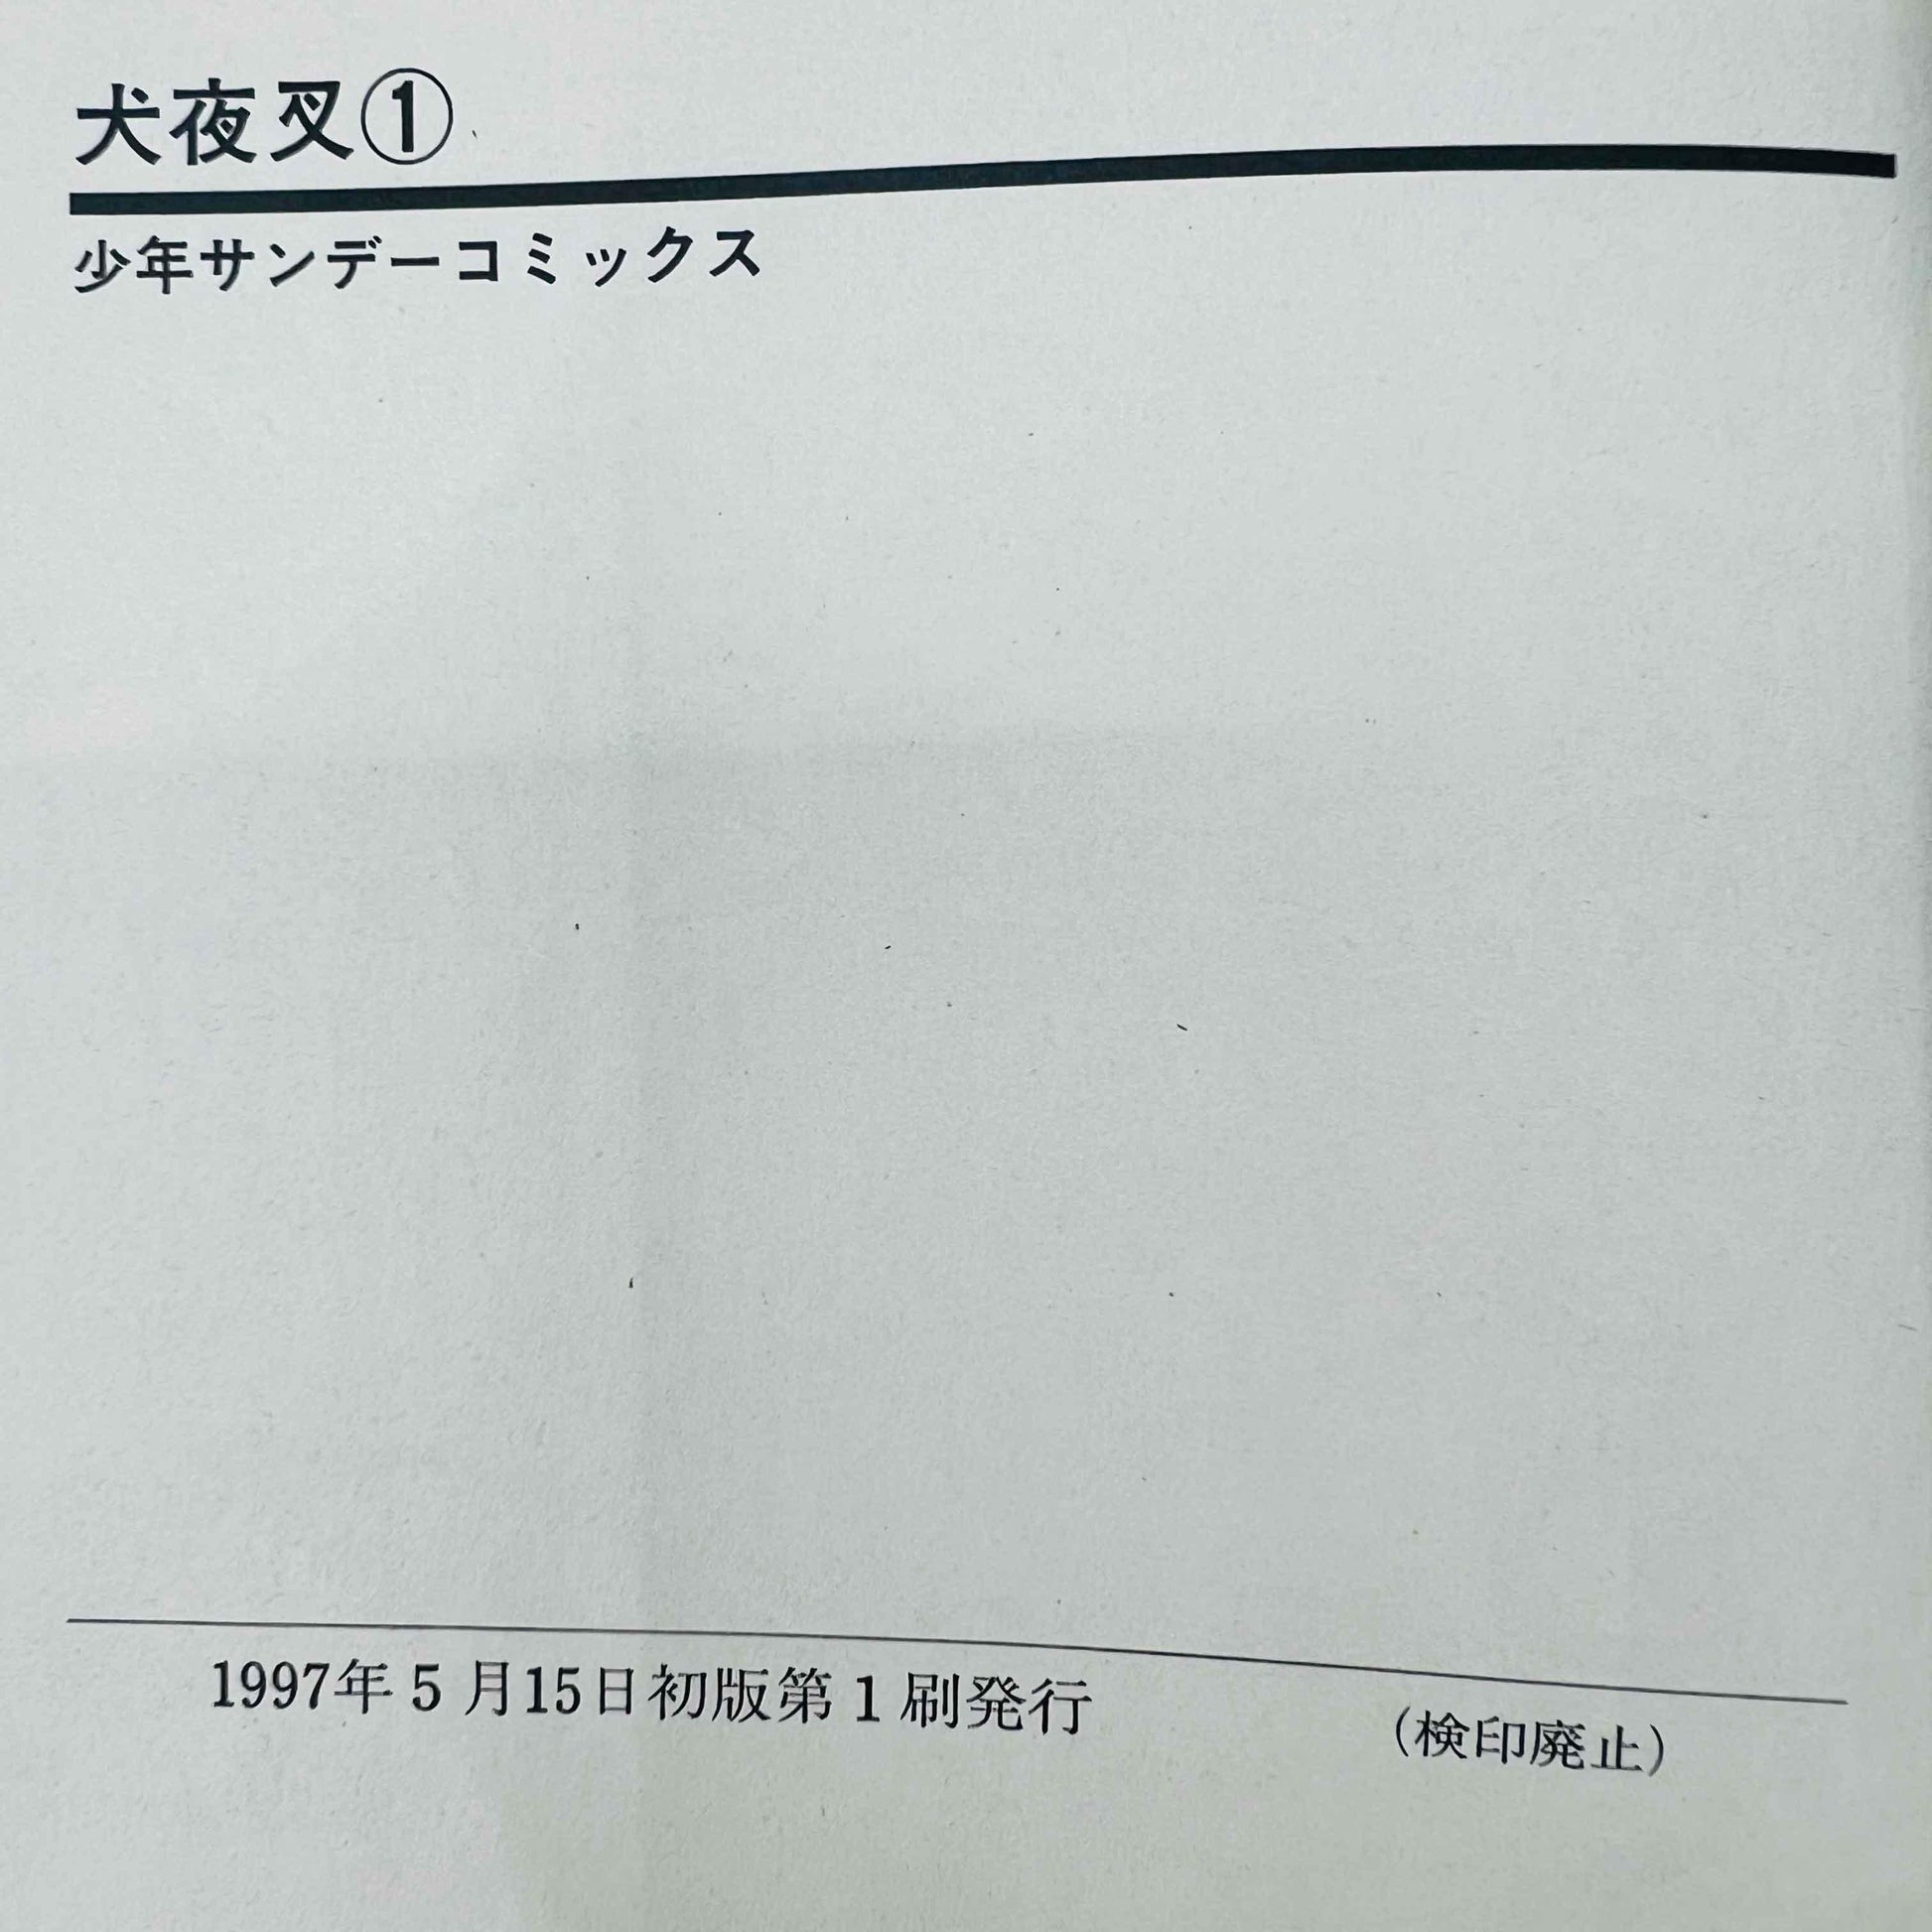 Inuyasha - Volume 01 - 1stPrint.net - 1st First Print Edition Manga Store - M-INU-01-002